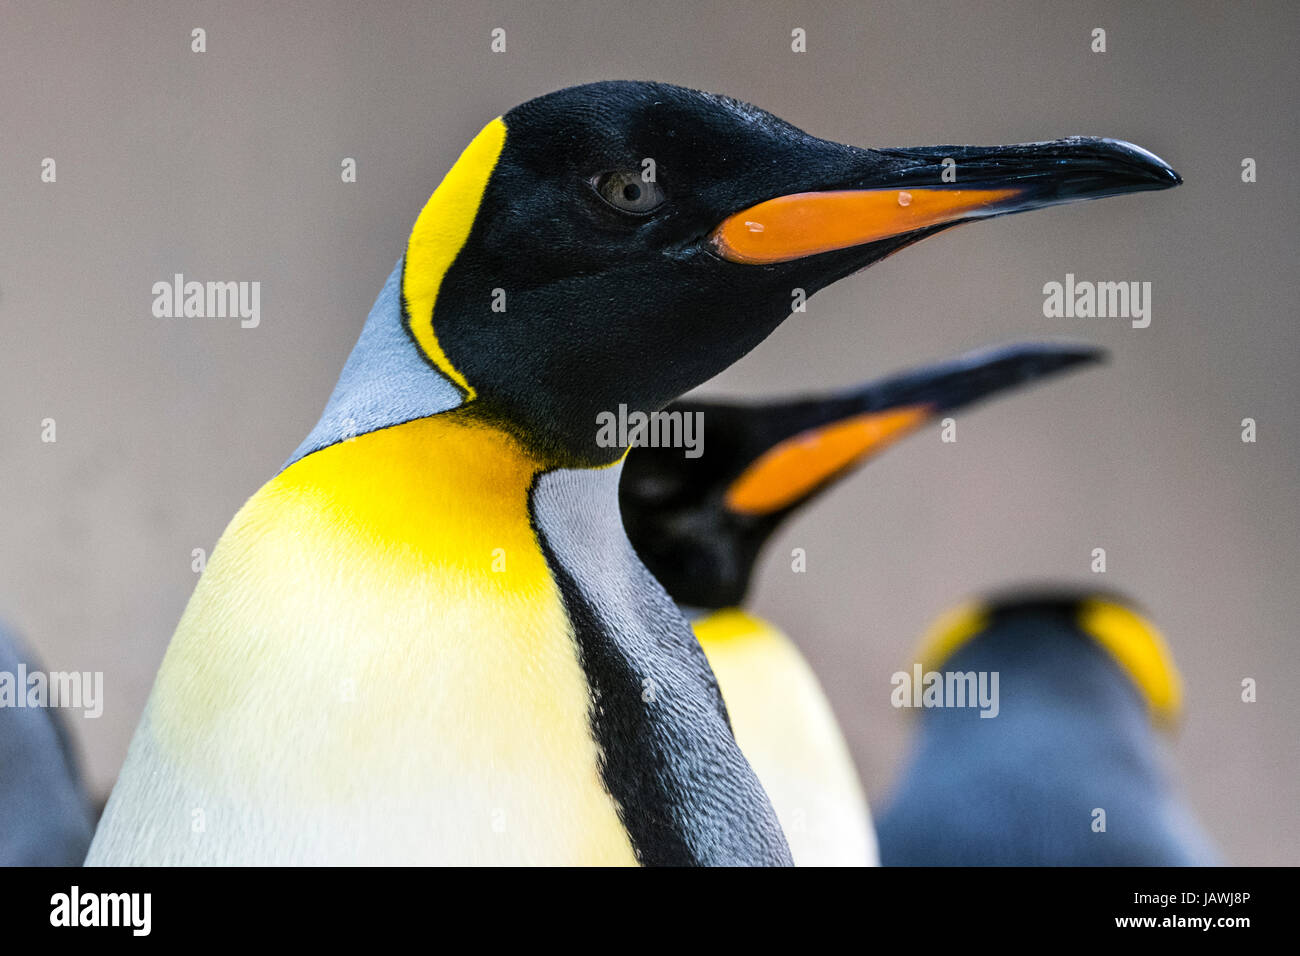 Amarillo-naranja brillante plumaje de plumas del pecho y mandíbula nomenclaturas del pingüino rey. Foto de stock